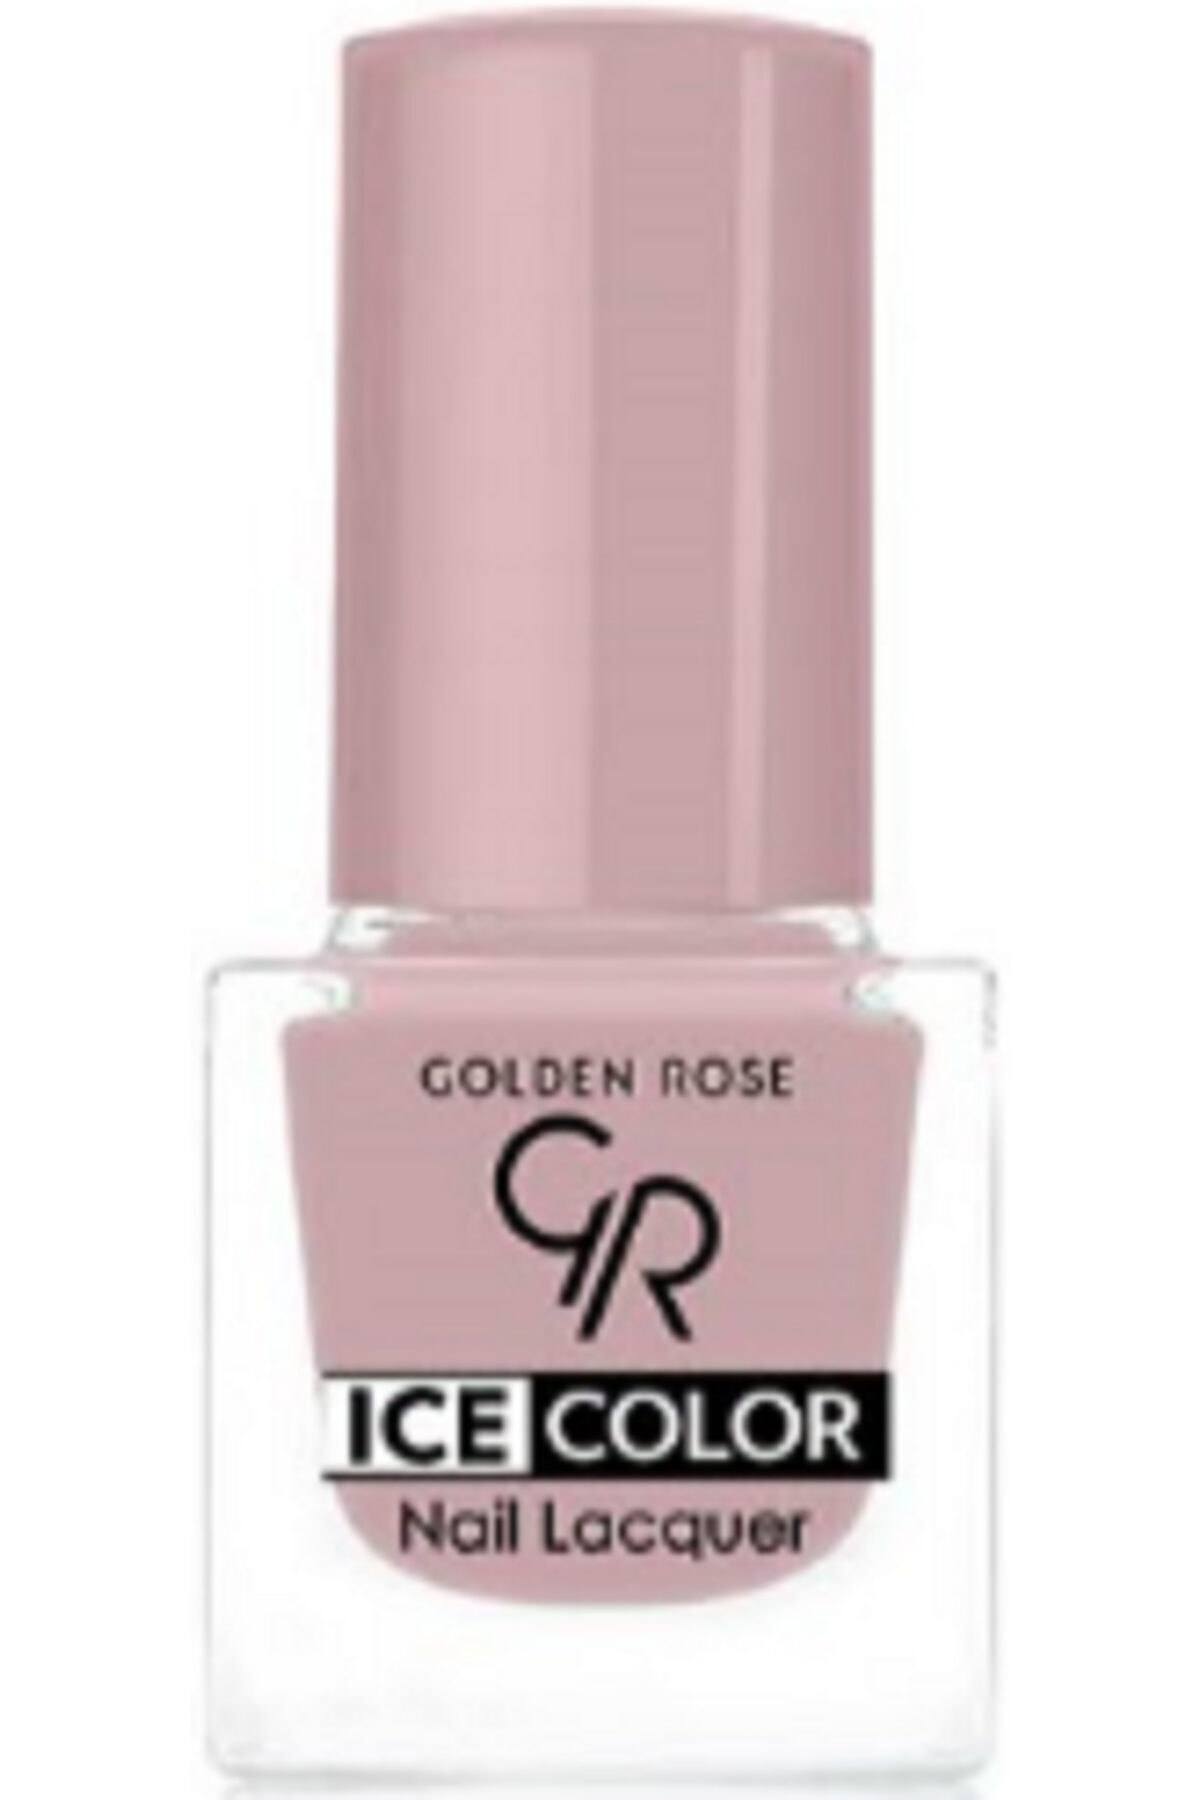 لاک ناخن یخی آیس چیک ICE شماره 215 رنگ صورتی یاسی گلدن رز Golden Rose